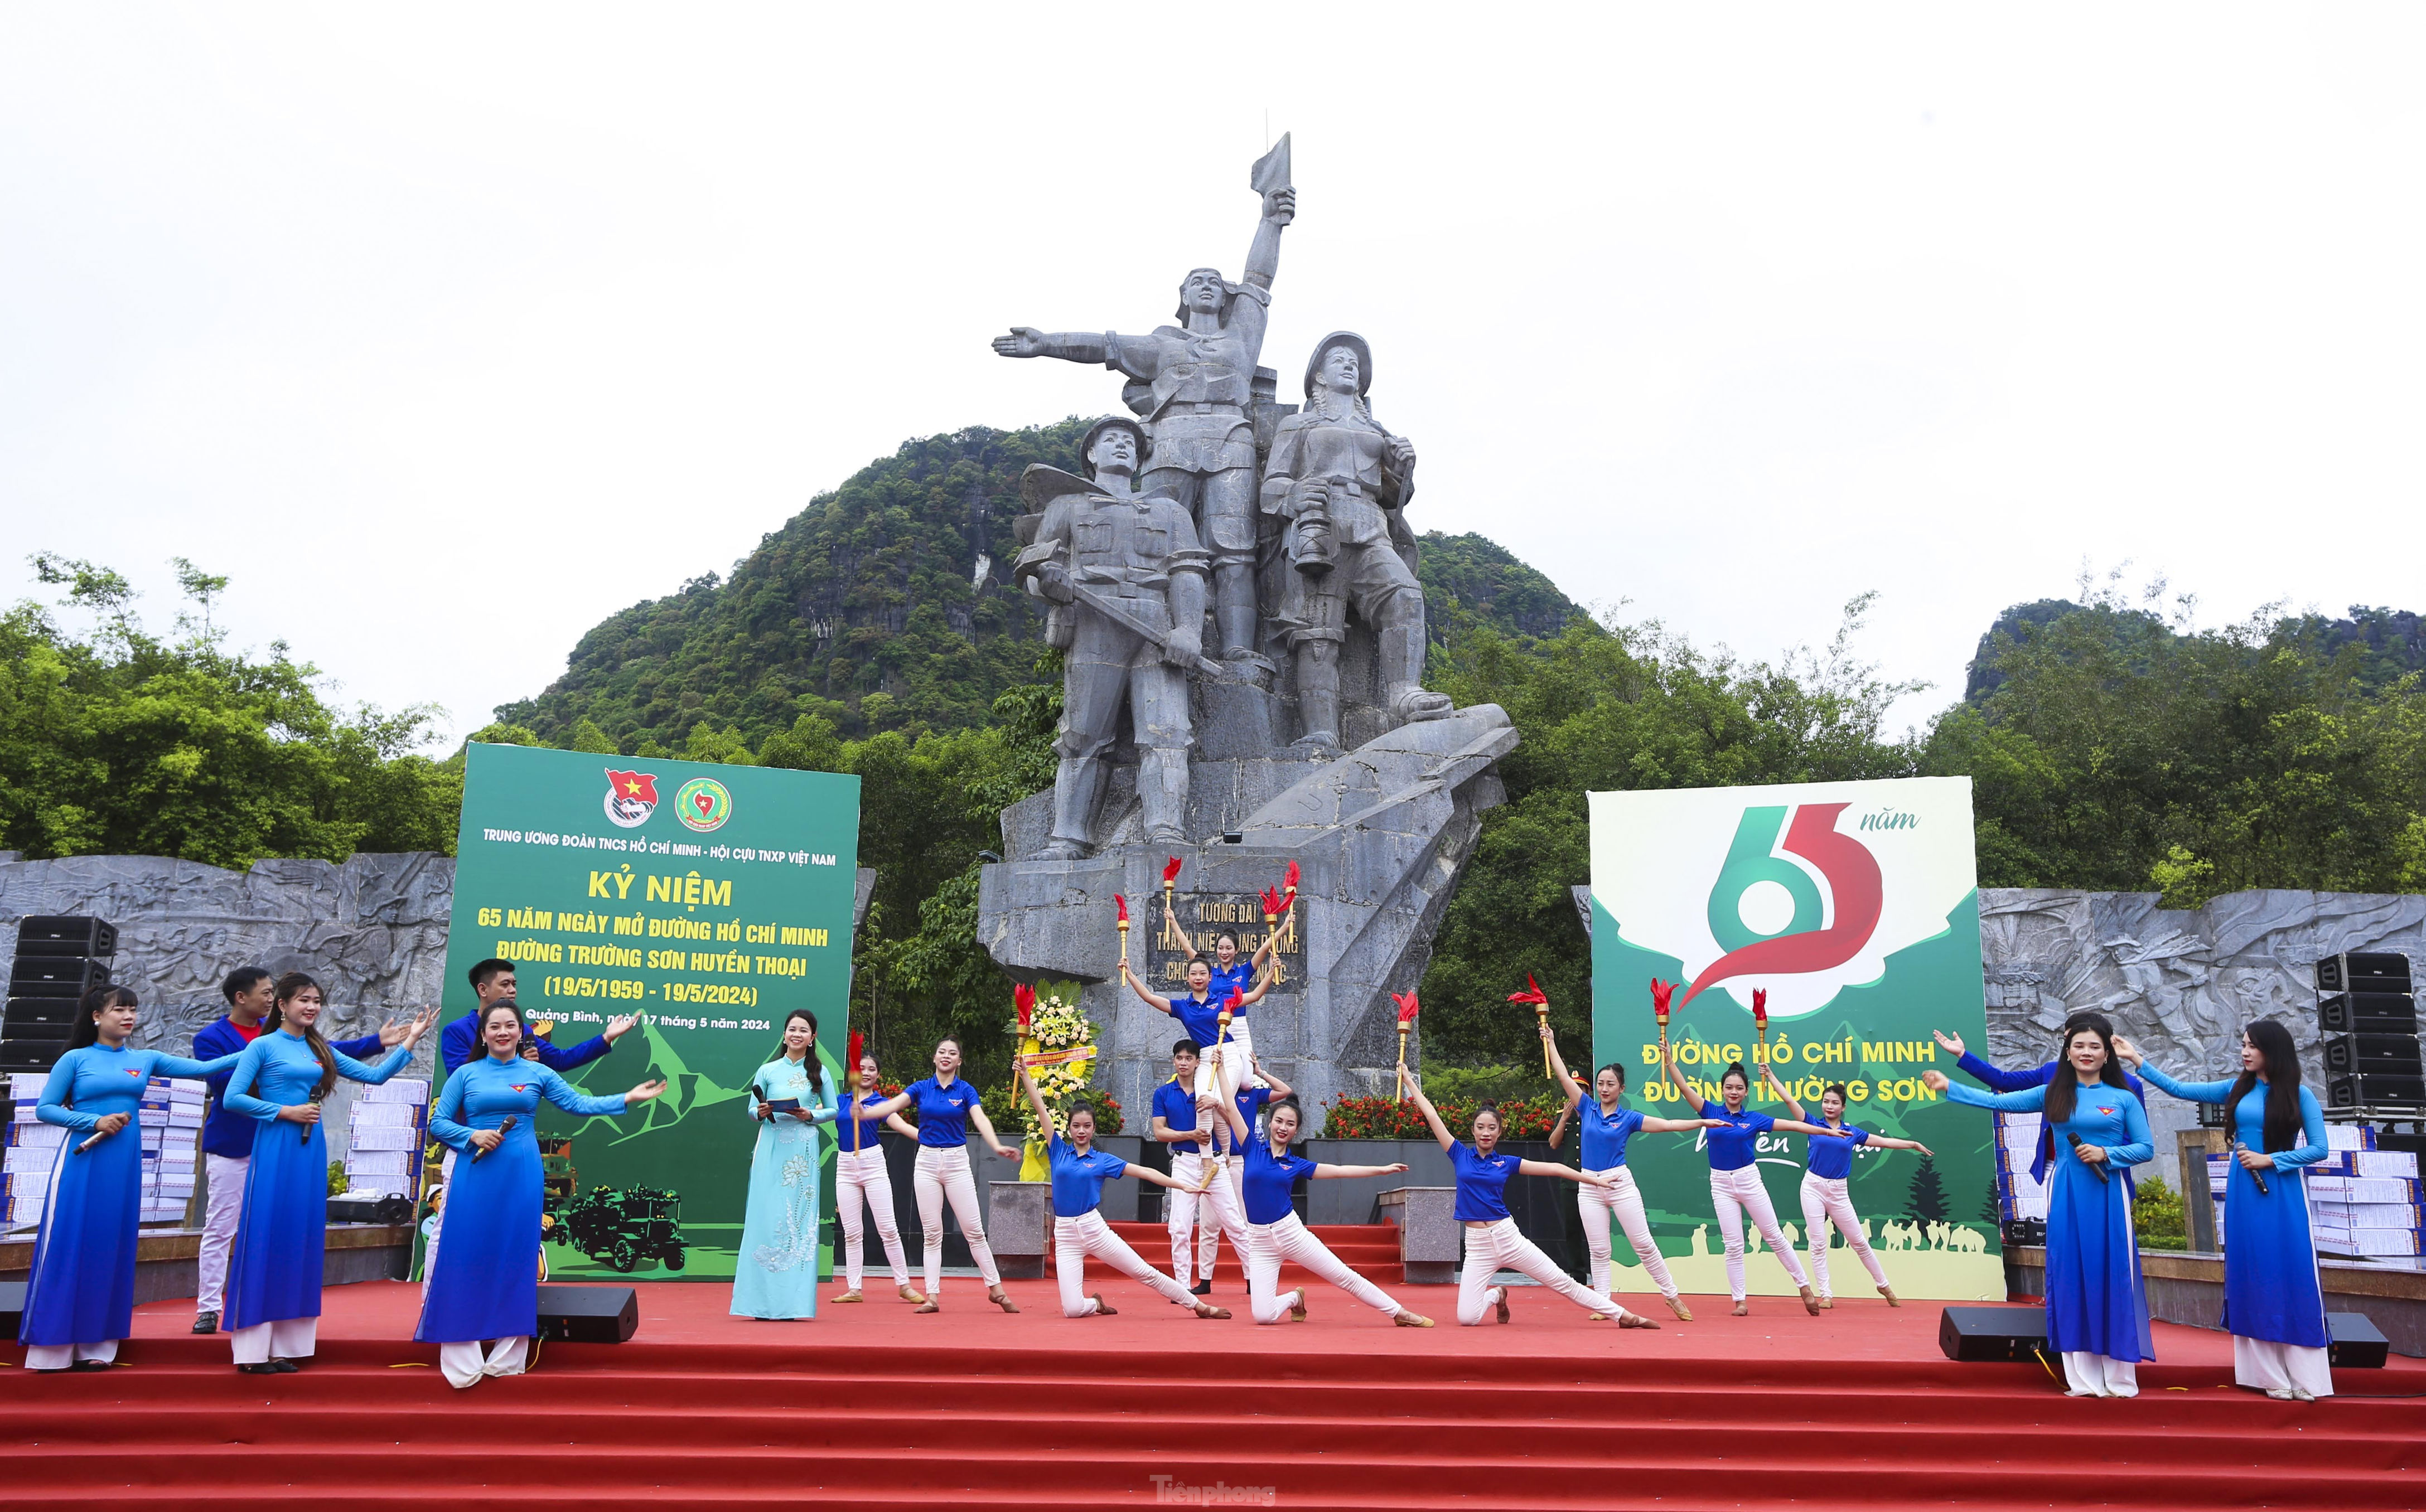 Kỷ niệm 65 năm Ngày mở đường Trường Sơn huyền thoại